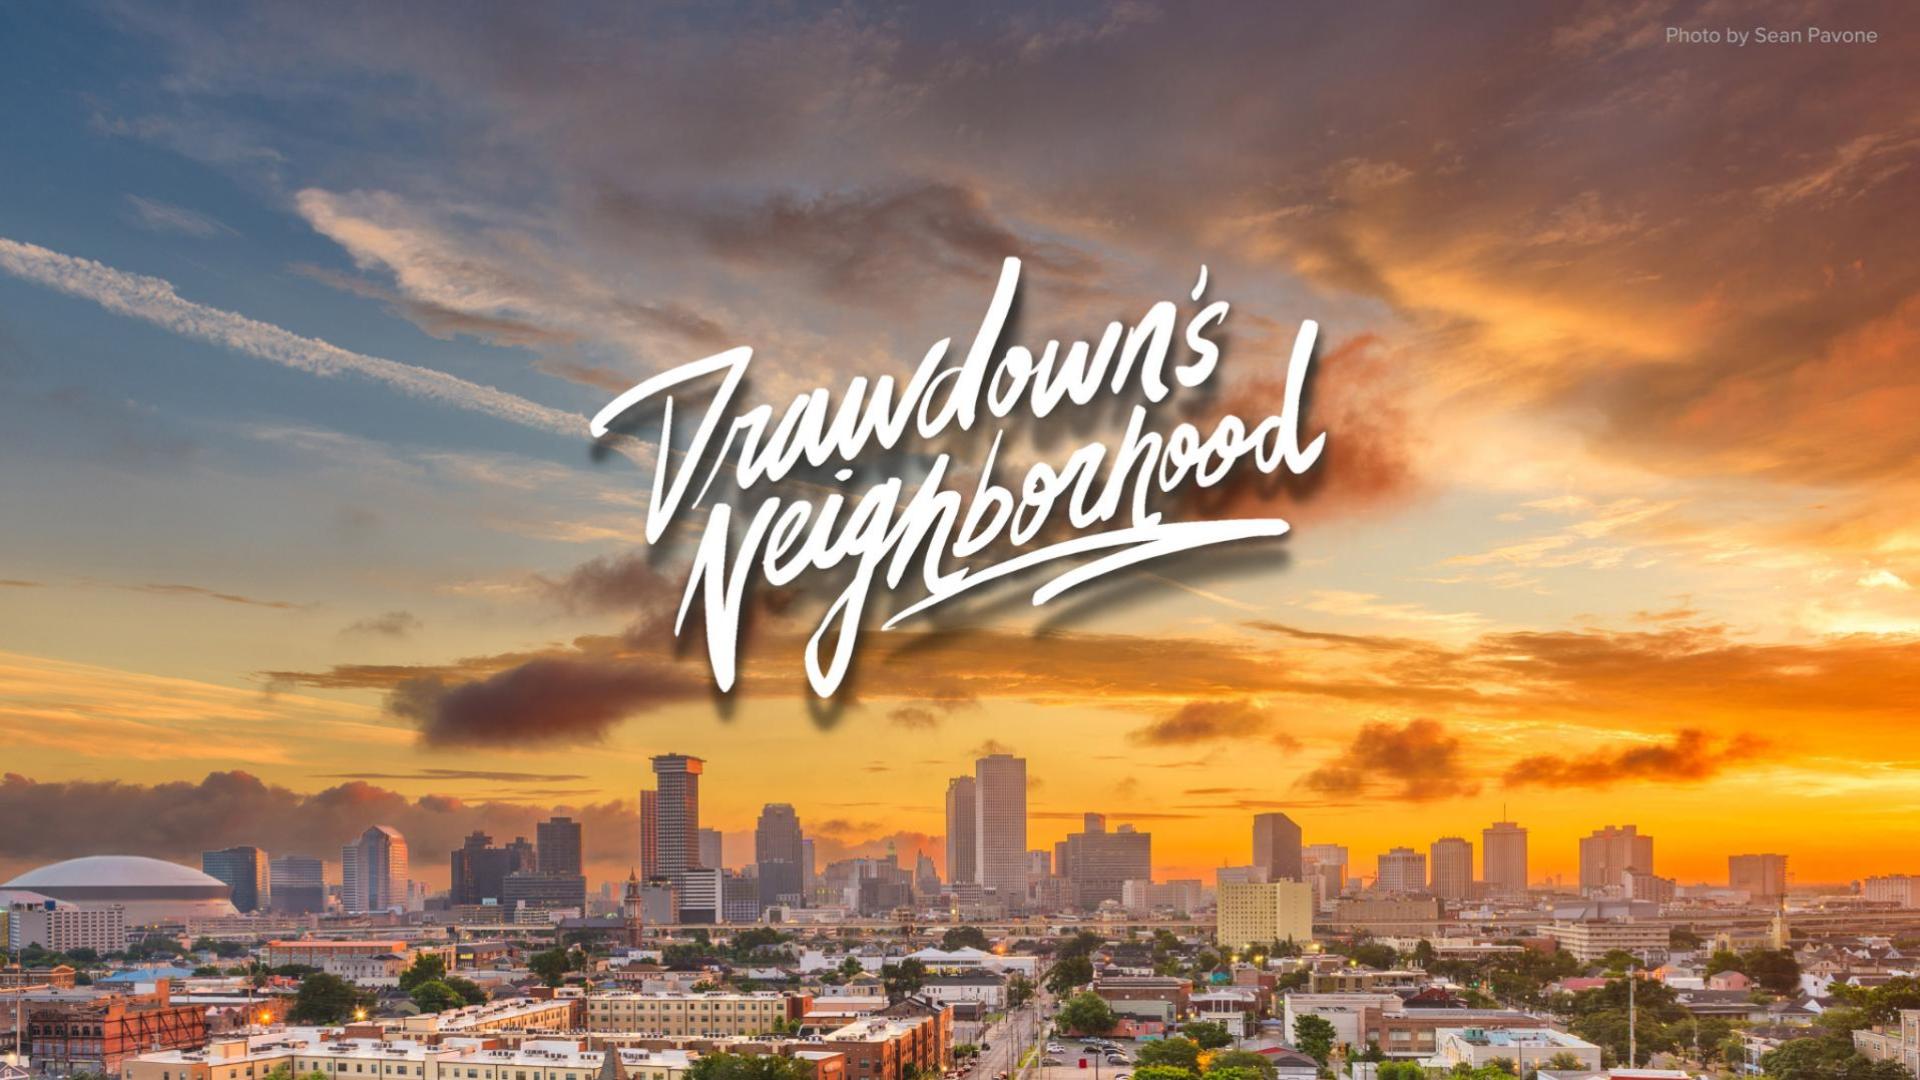 Skyline with "Drawdown's Neighborhood" caption